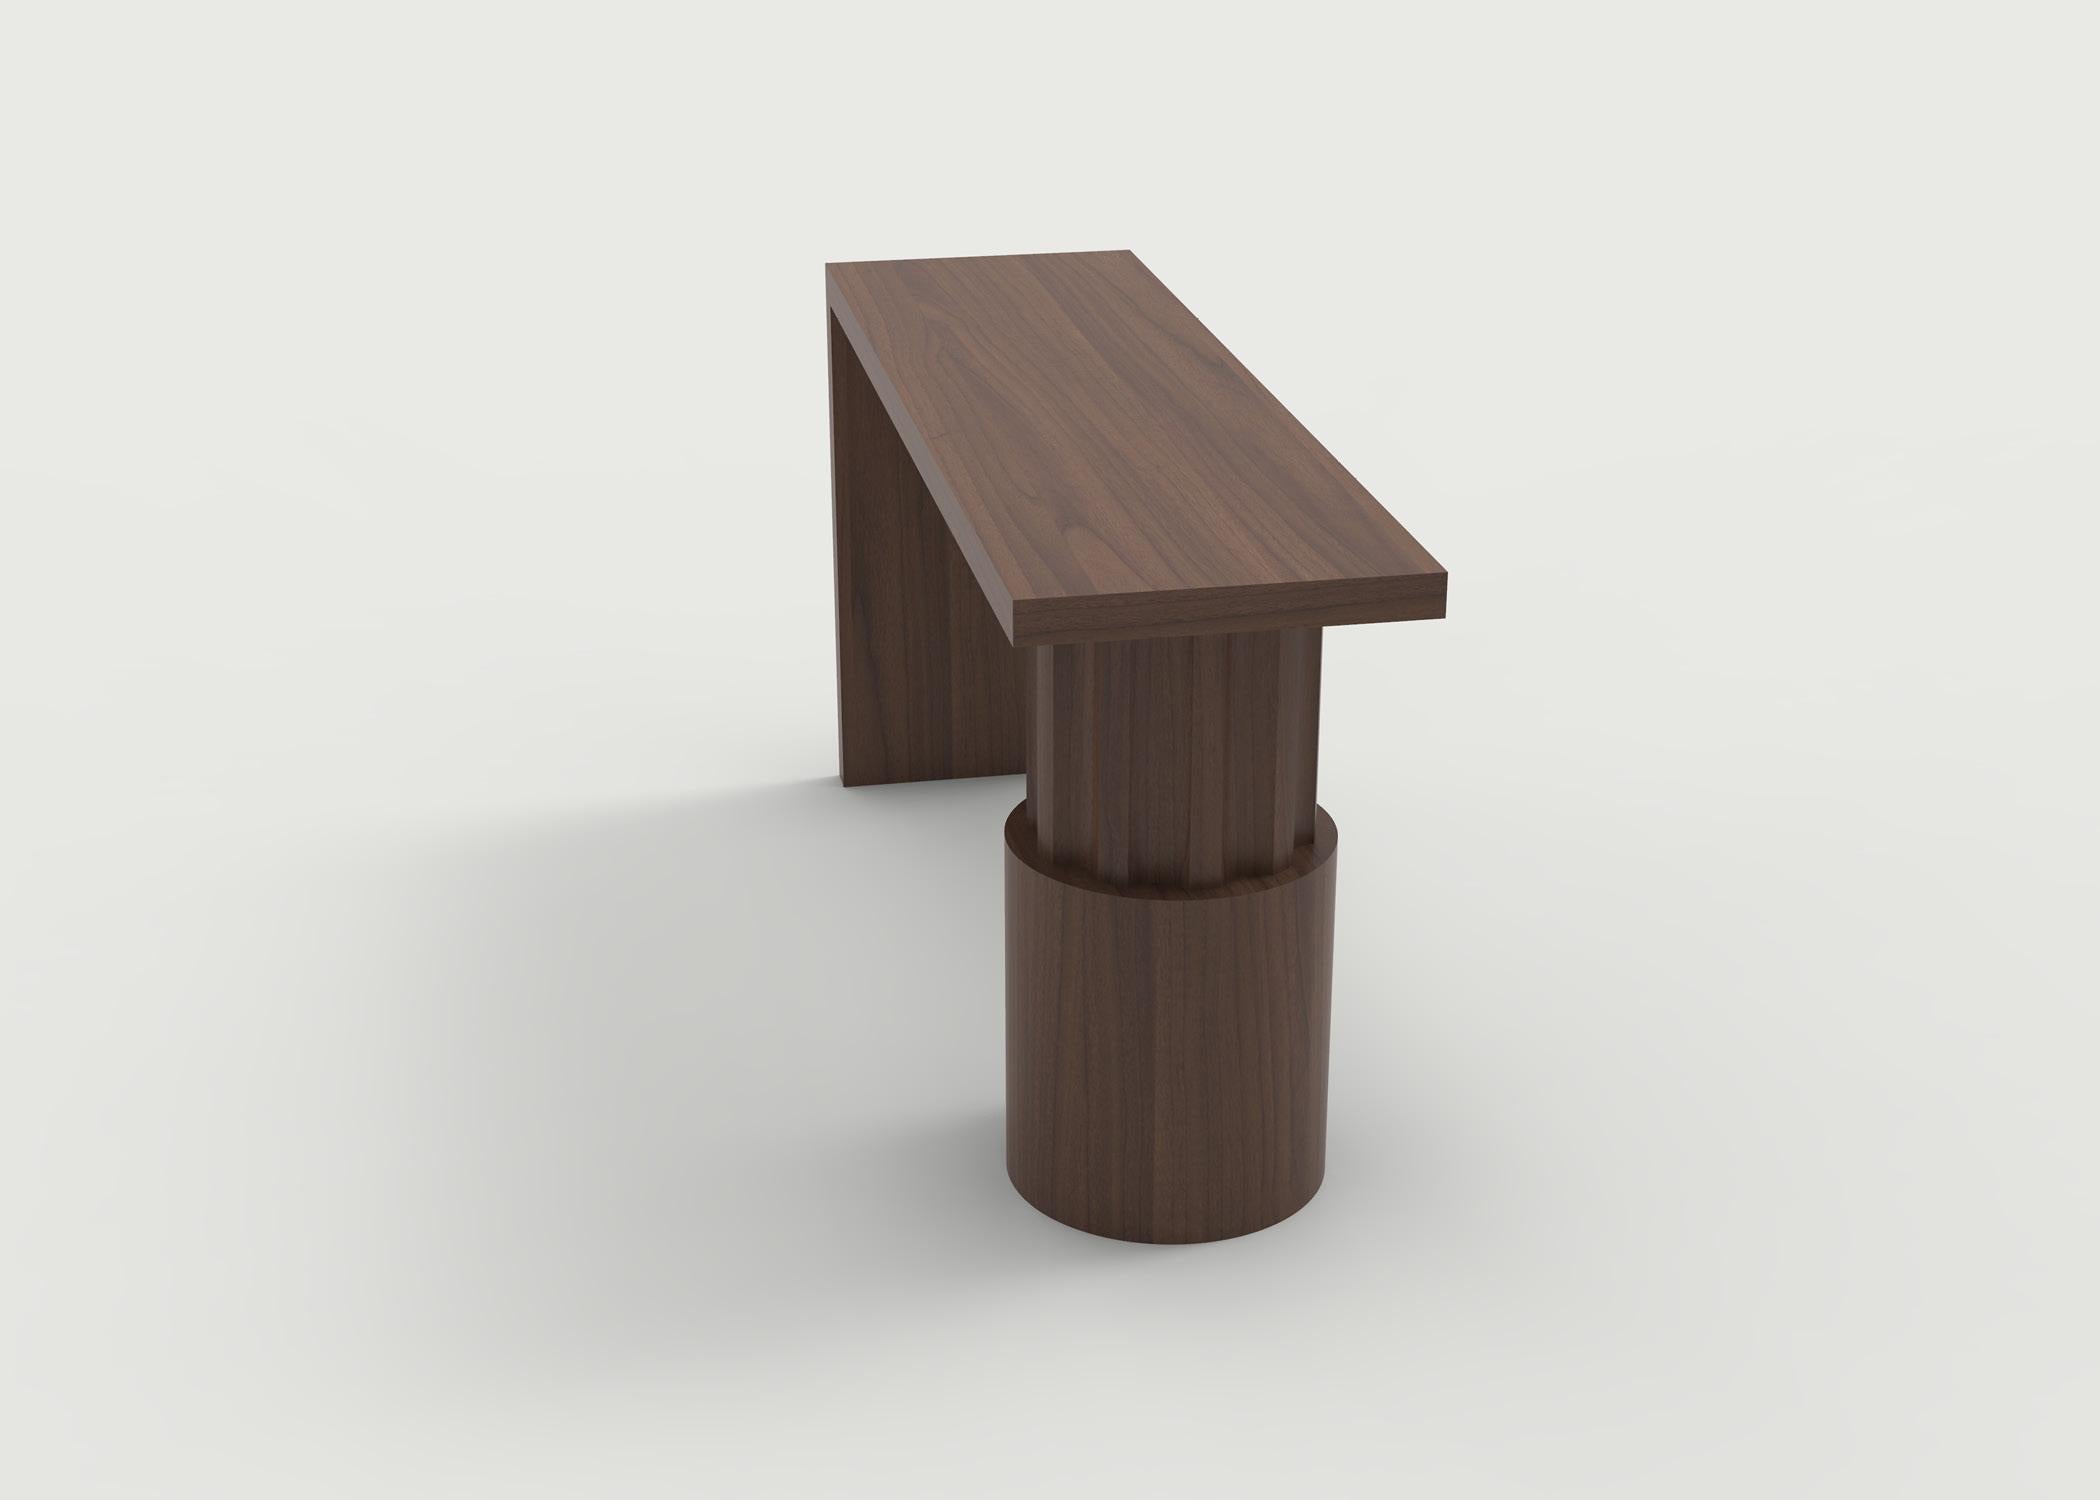 Die abgebildete Warren-Konsole hat eine Platte aus Massivholz und einen geformten Sockel - und kann als Schreibtisch für die Arbeit zu Hause genutzt werden. Alle handgeschnitzt und fertiggestellt in unserem Geschäft in Brooklyn. Sorgfältig